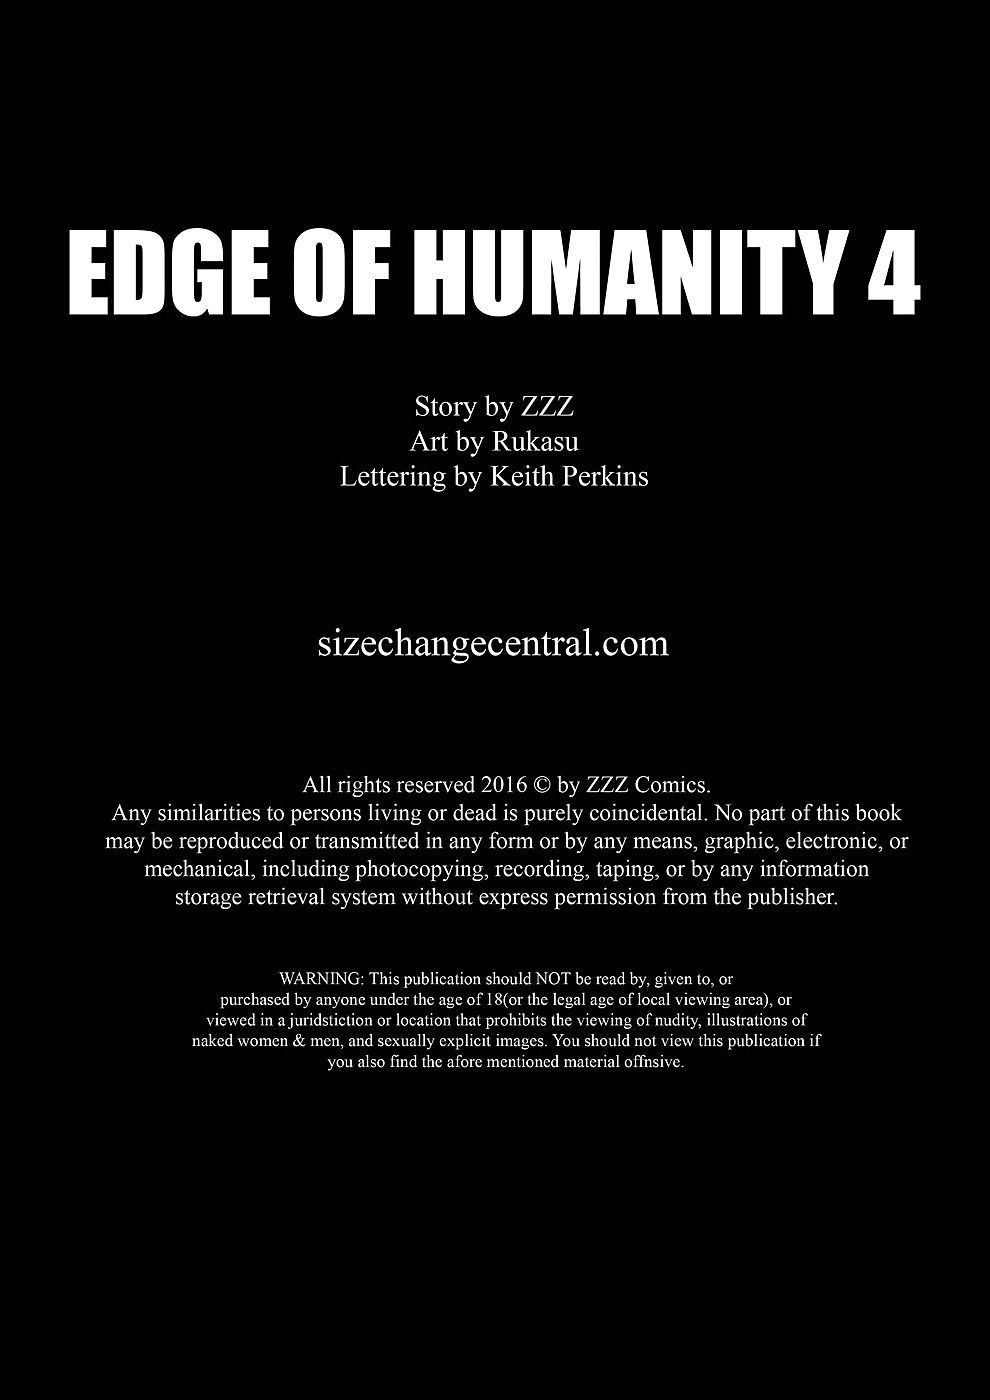 zzz borda de a humanidade 4 page 1